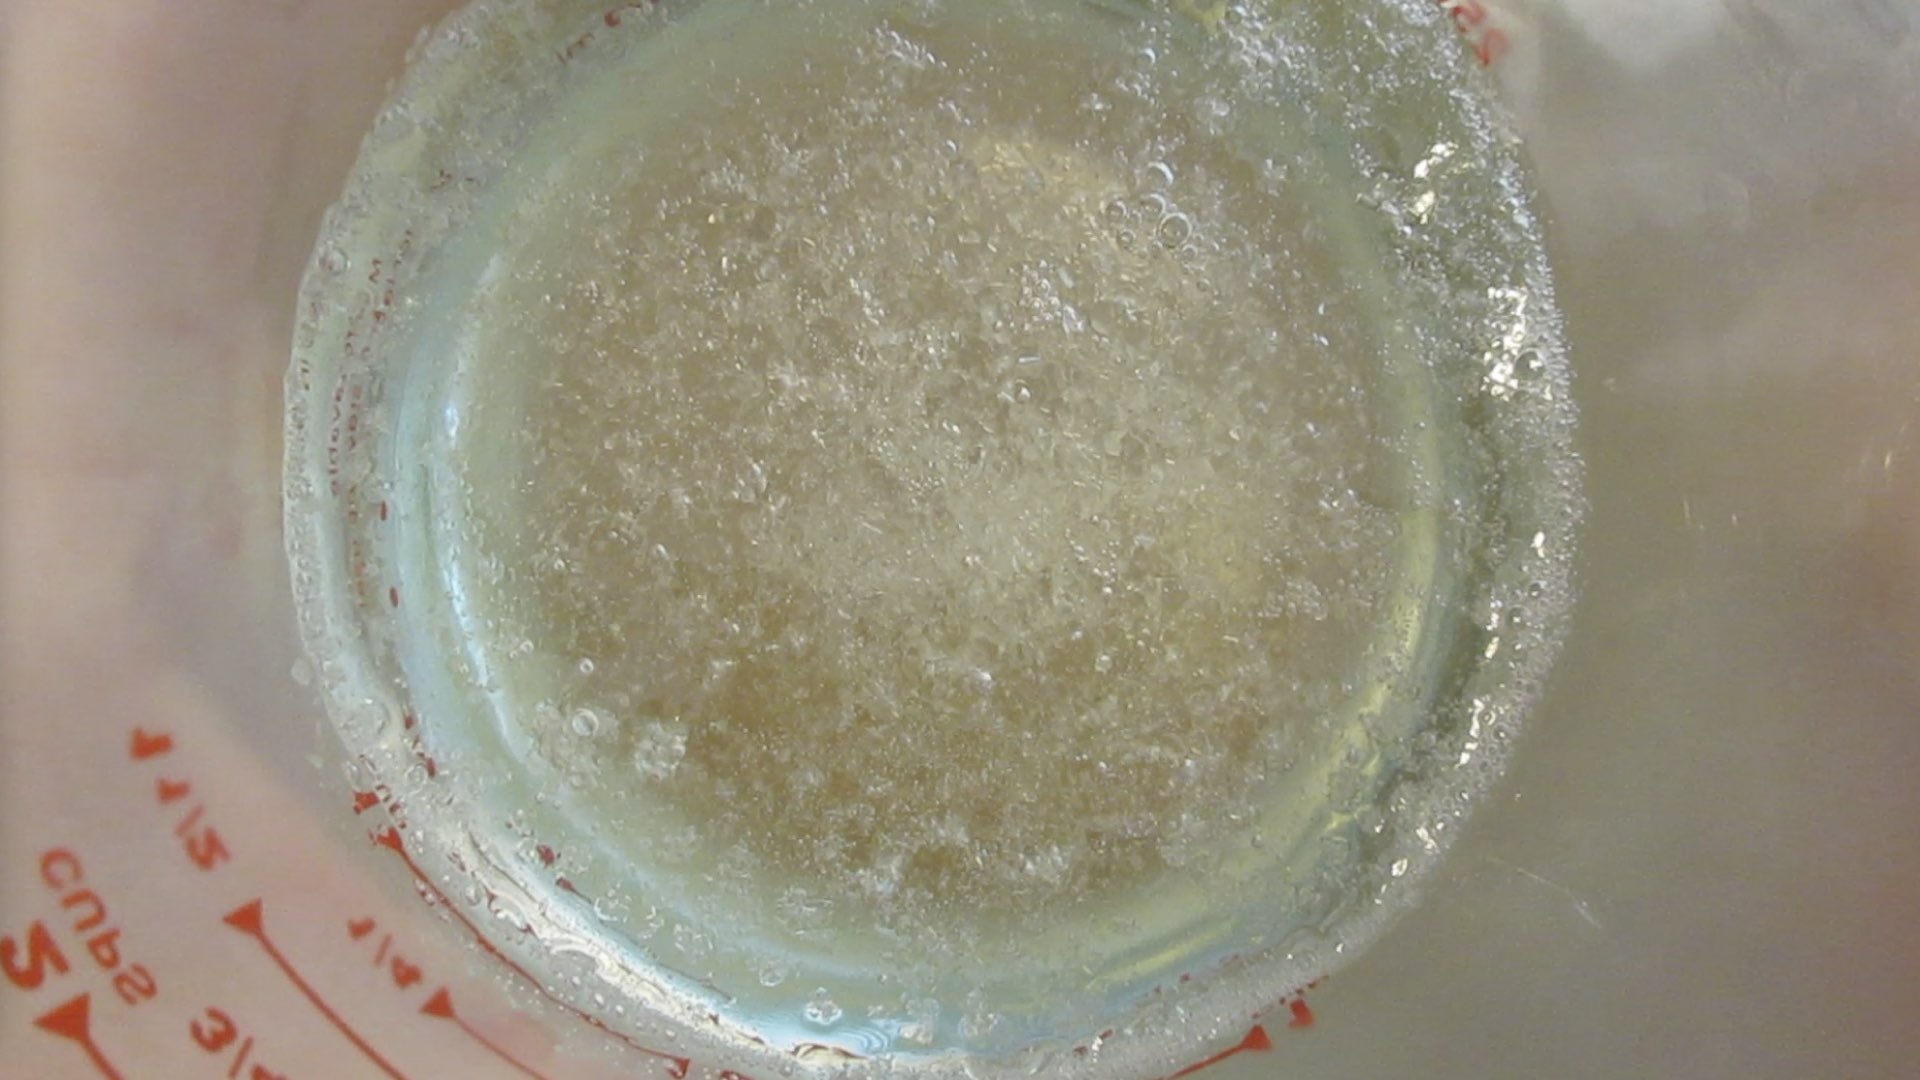 crystalized sugar